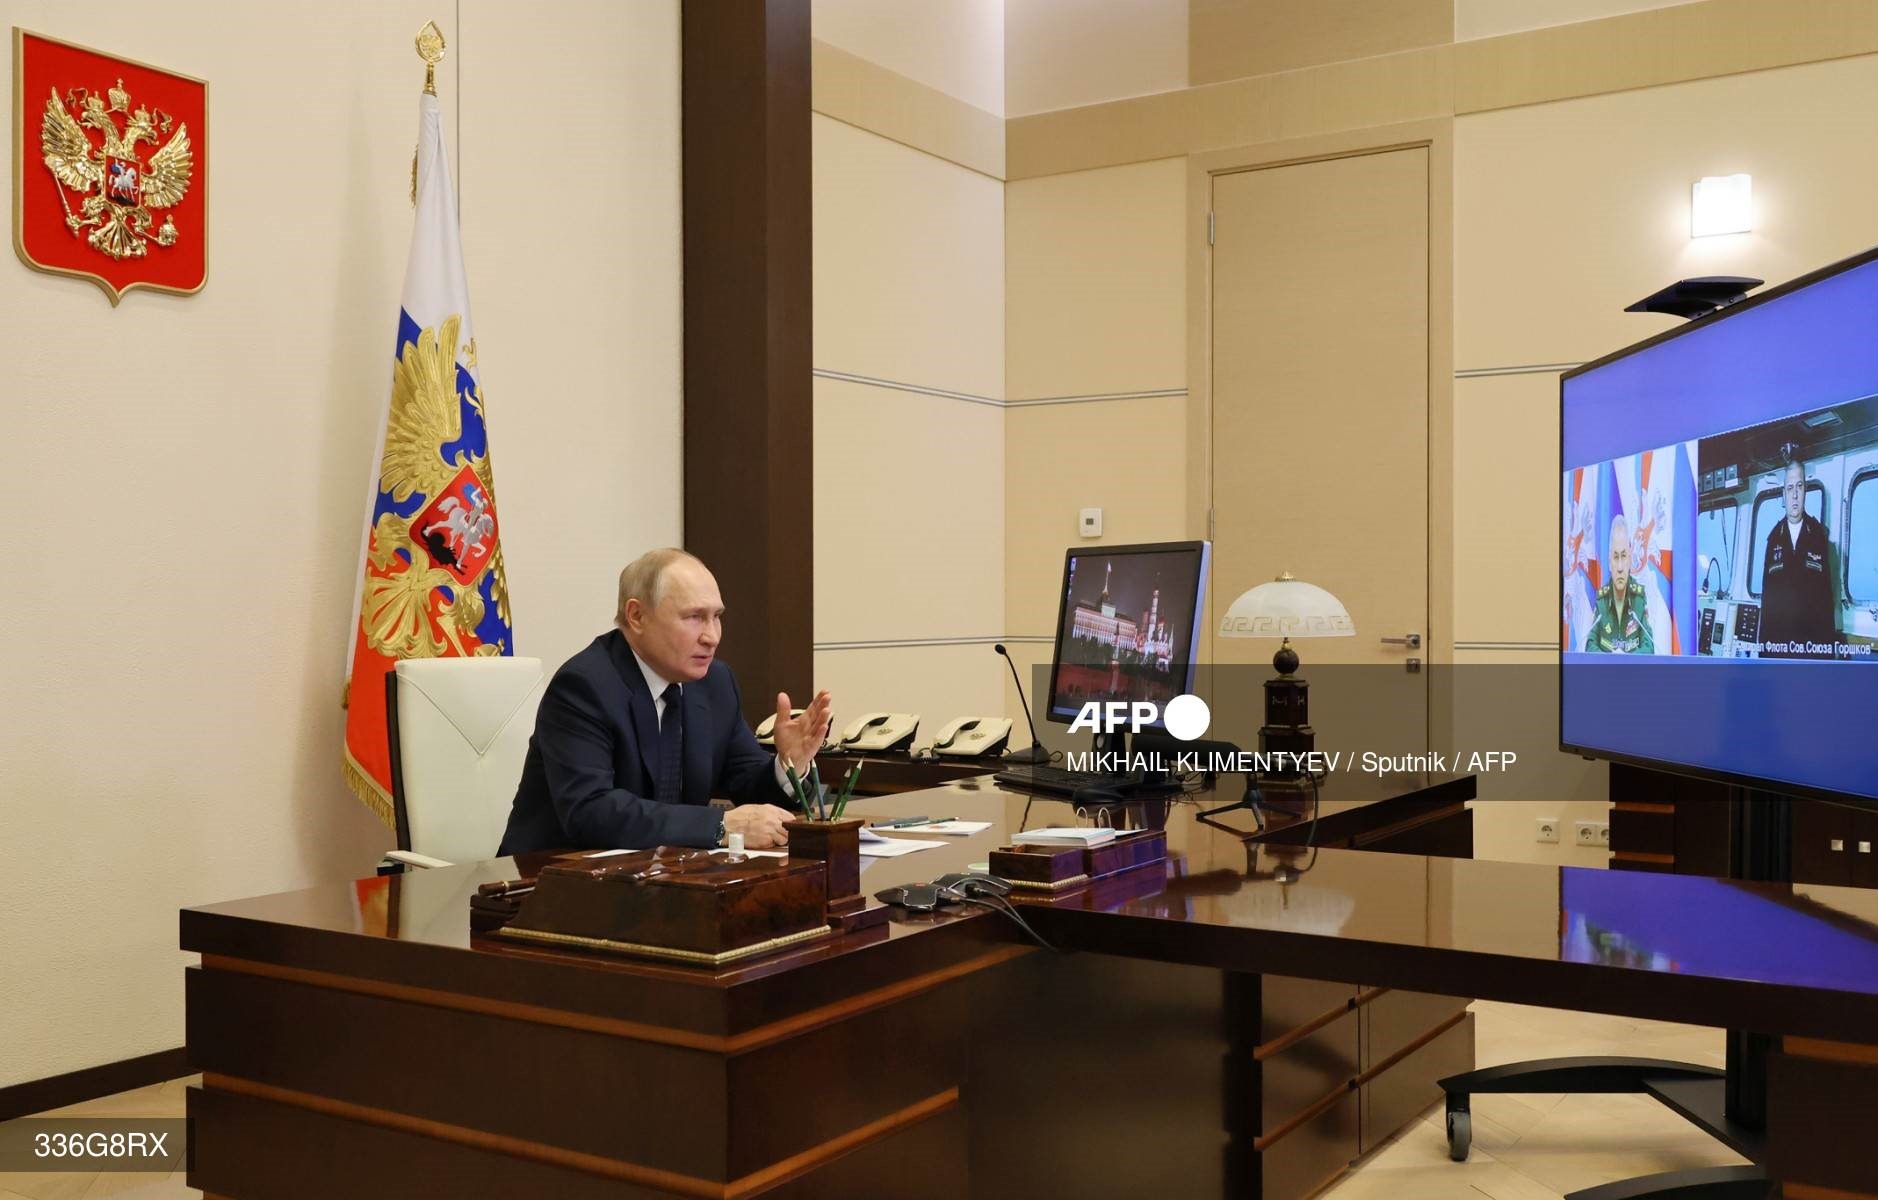 Tổng thống Nga Vladimir Putin họp trực tuyến với Bộ trưởng Quốc phòng Sergei Shoigu và Igor Krokhmal - chỉ huy tàu khu trục “Đô đốc Hạm đội Liên Xô Gorshkov” ngày 4.1. Ảnh: AFP